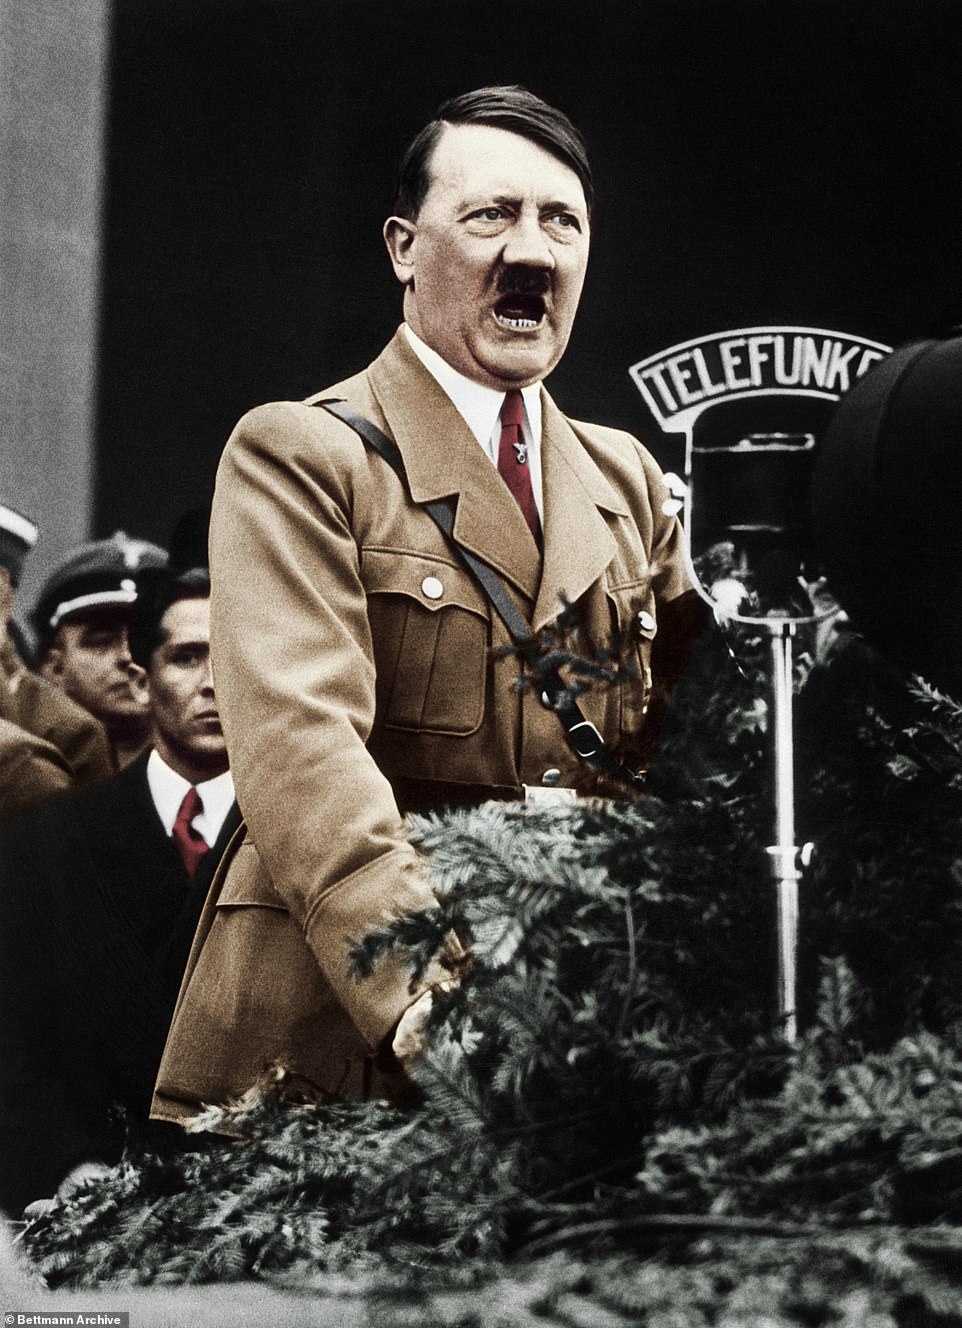 Bí mật về những ngày cuối cùng trong hầm trú ẩn của Hitler được tiết lộ - Ảnh 1.